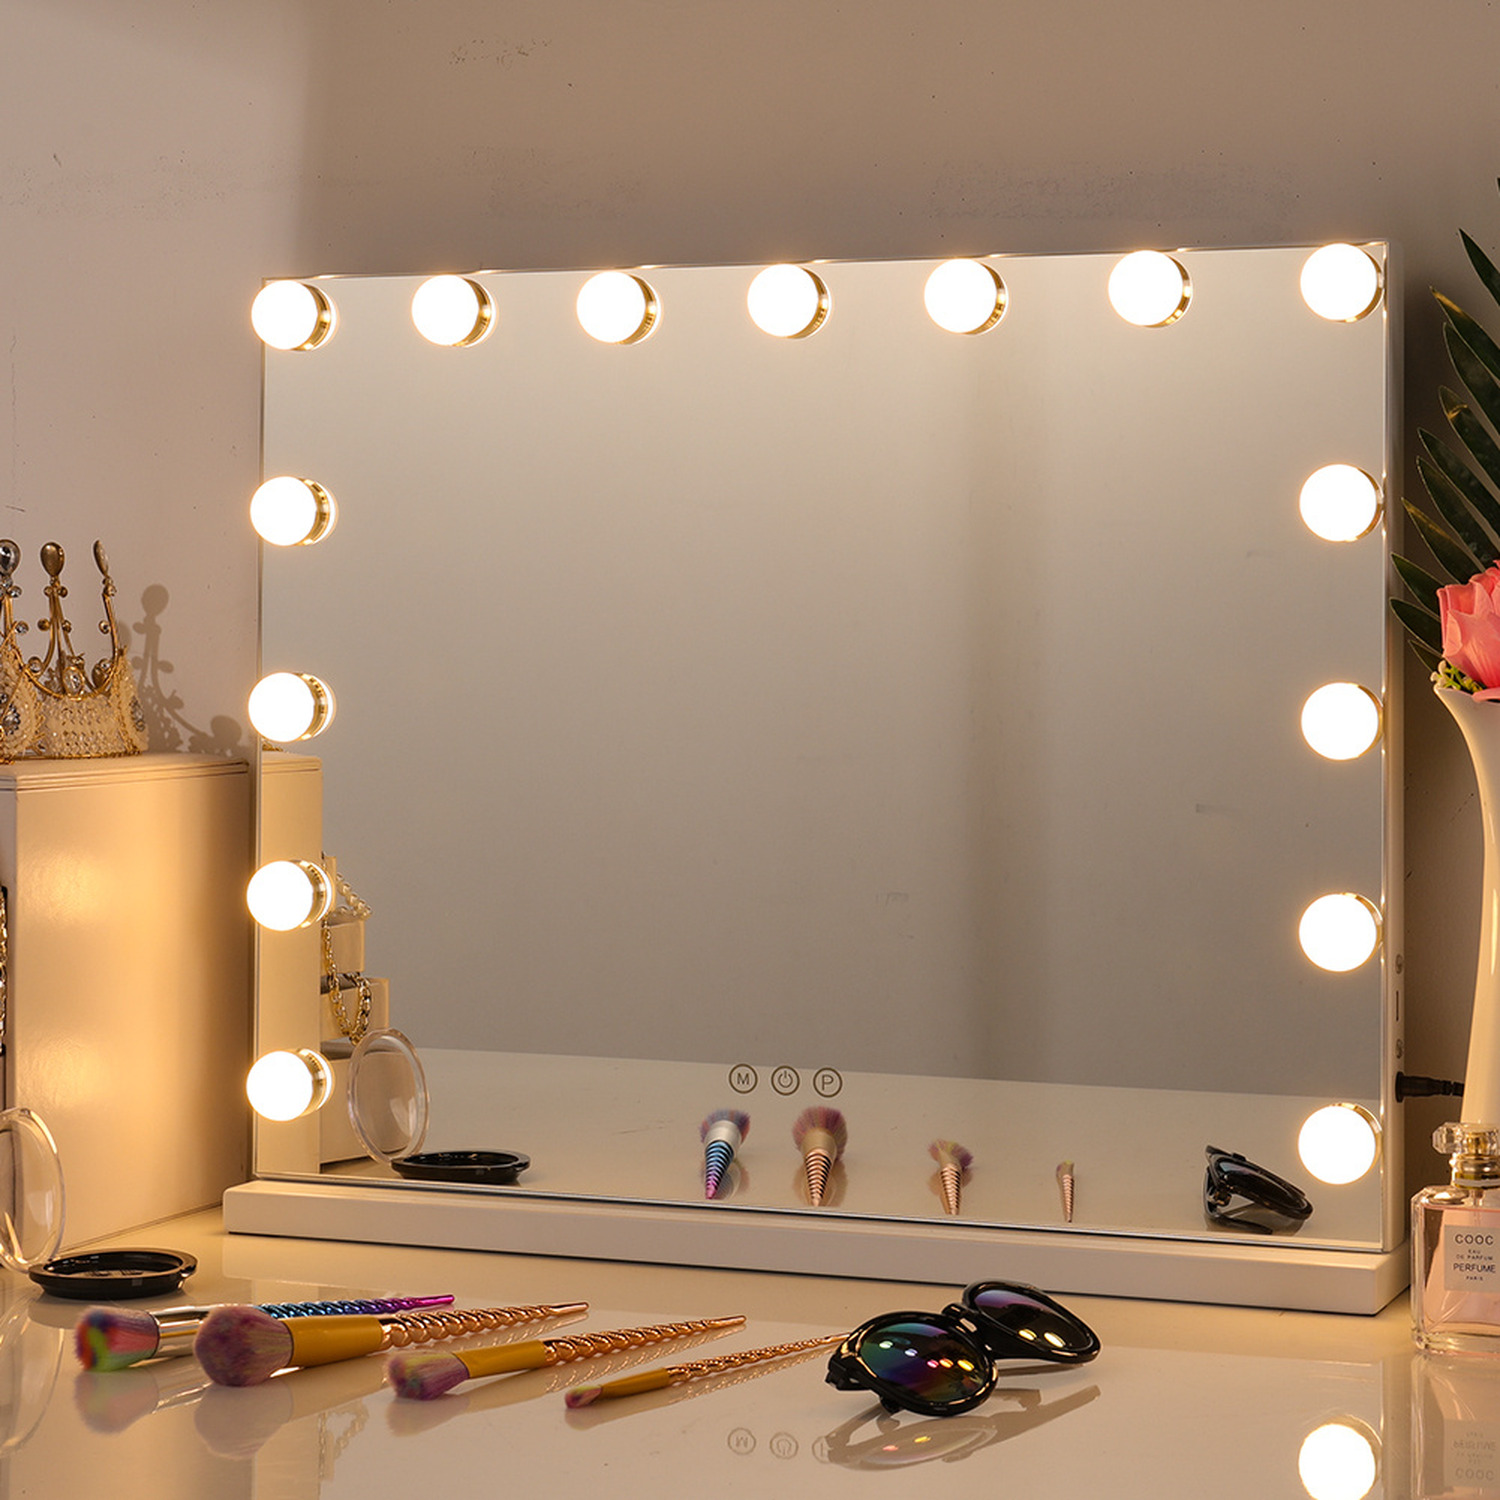 Sparen Sie 52 £ bei diesem beleuchteten Spiegel im Hollywood-Stil bei The Range